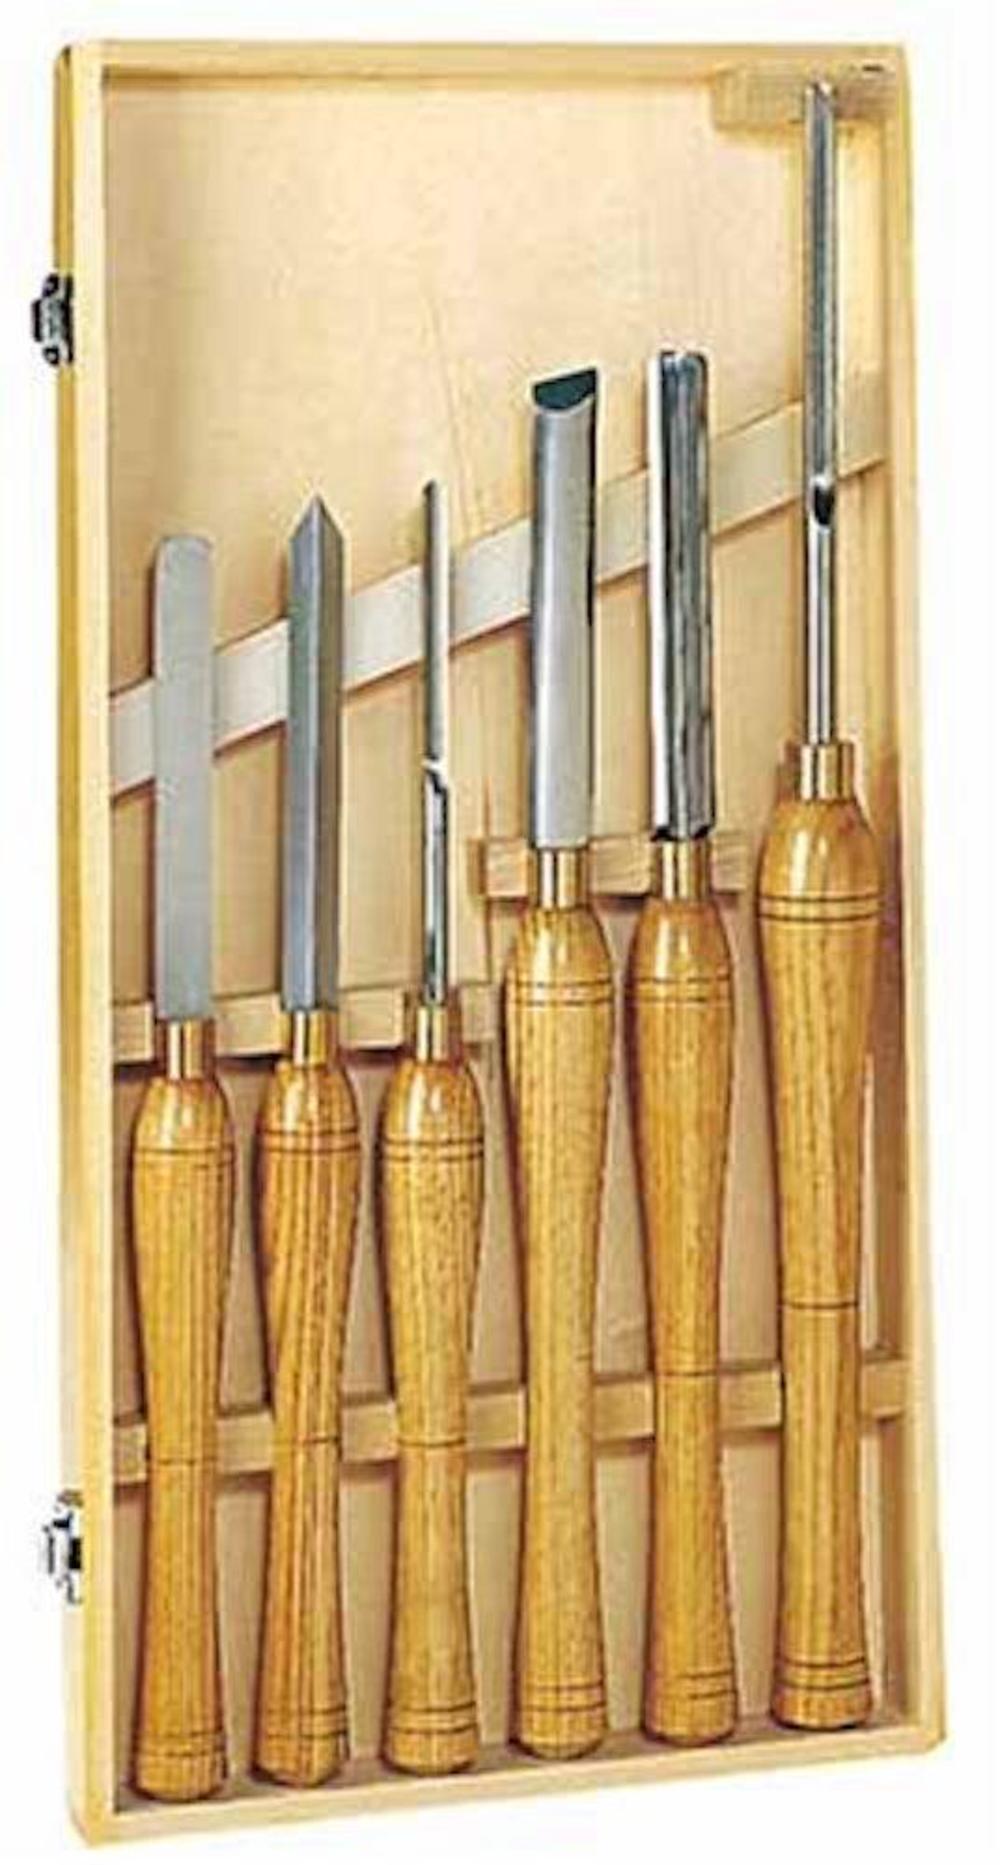 8 Piece Wood Chisel Set for Lathe Woodworking - Gouges, Skews